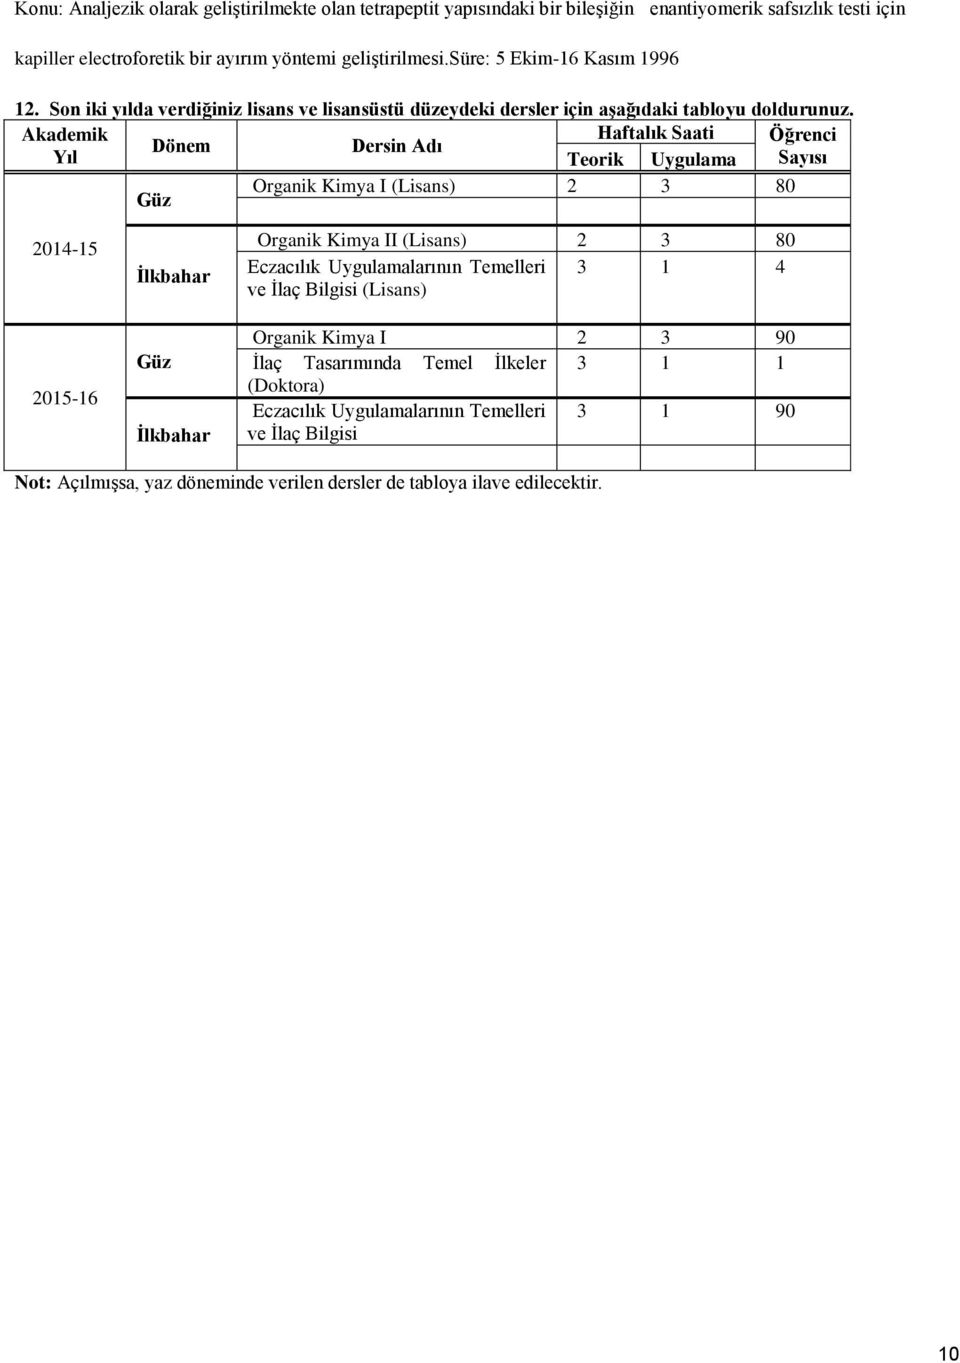 Akademik Haftalık Saati Öğrenci Dönem Dersin Adı Yıl Teorik Uygulama Sayısı Organik Kimya I (Lisans) 2 3 80 Güz 2014-15 2015-16 İlkbahar Güz İlkbahar Organik Kimya II (Lisans) 2 3 80